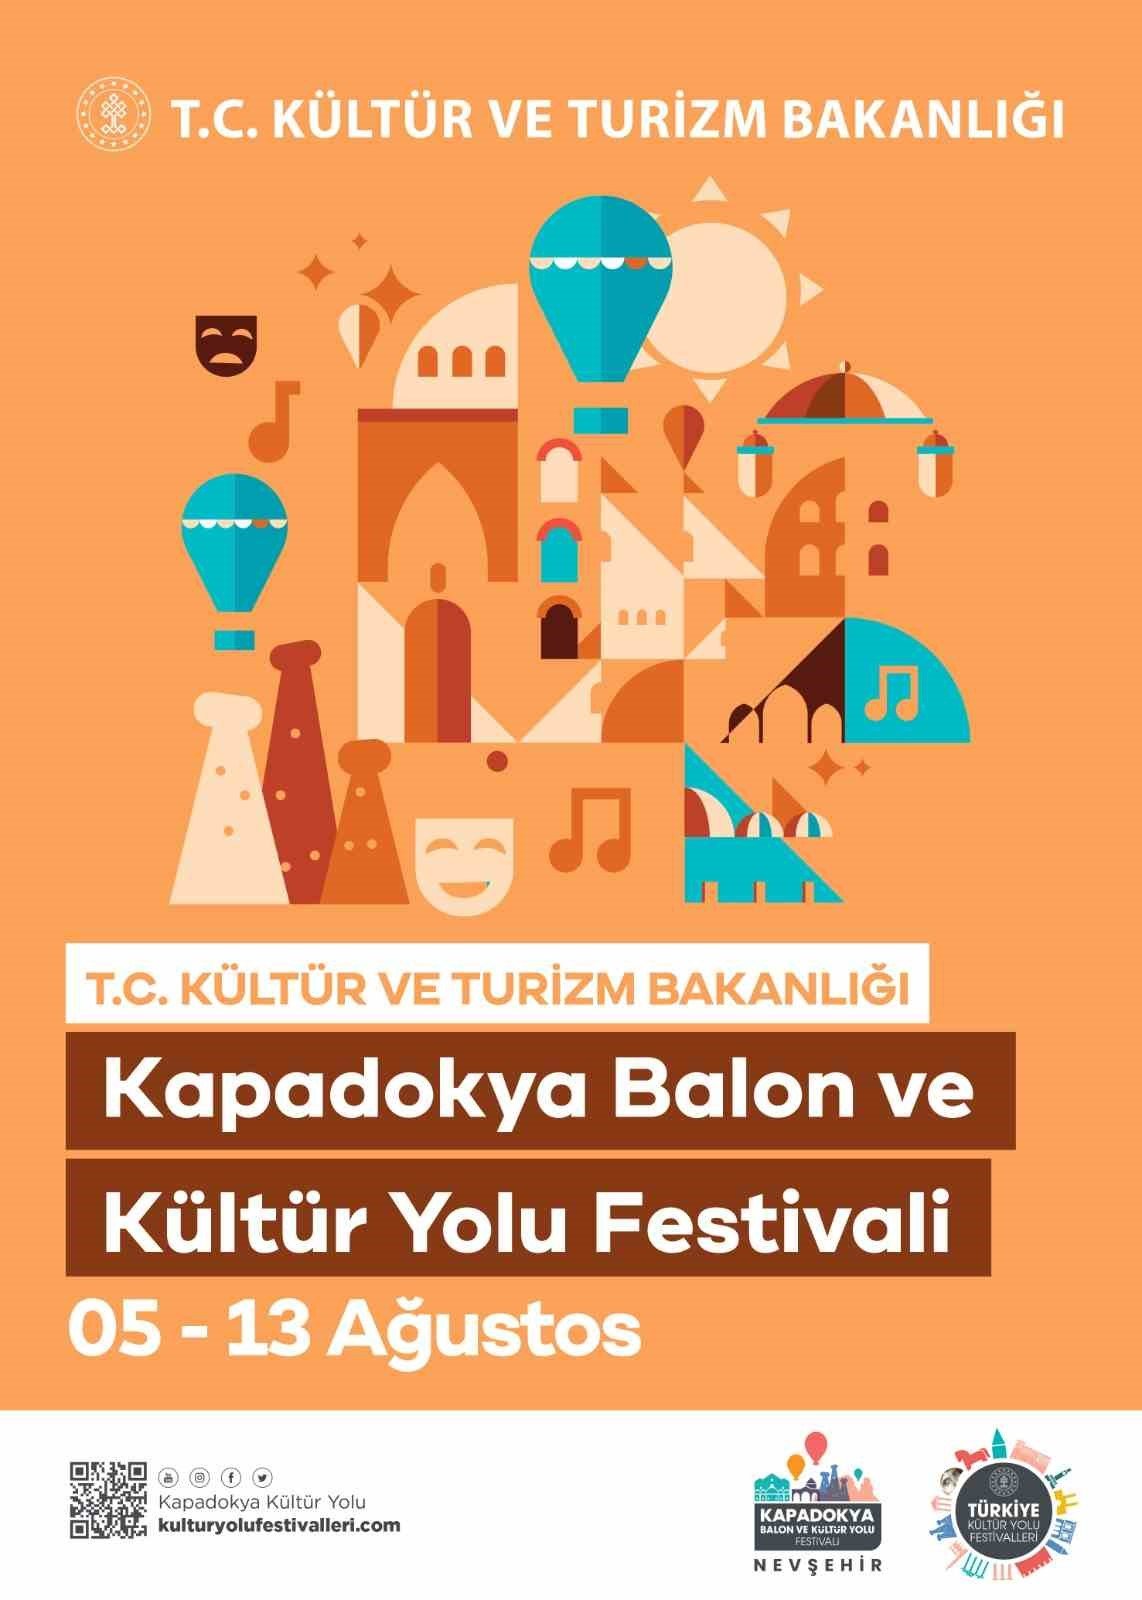 Kapadokya Balon ve Kültür Yolu Festivali 5 Ağustos’ta başlıyor